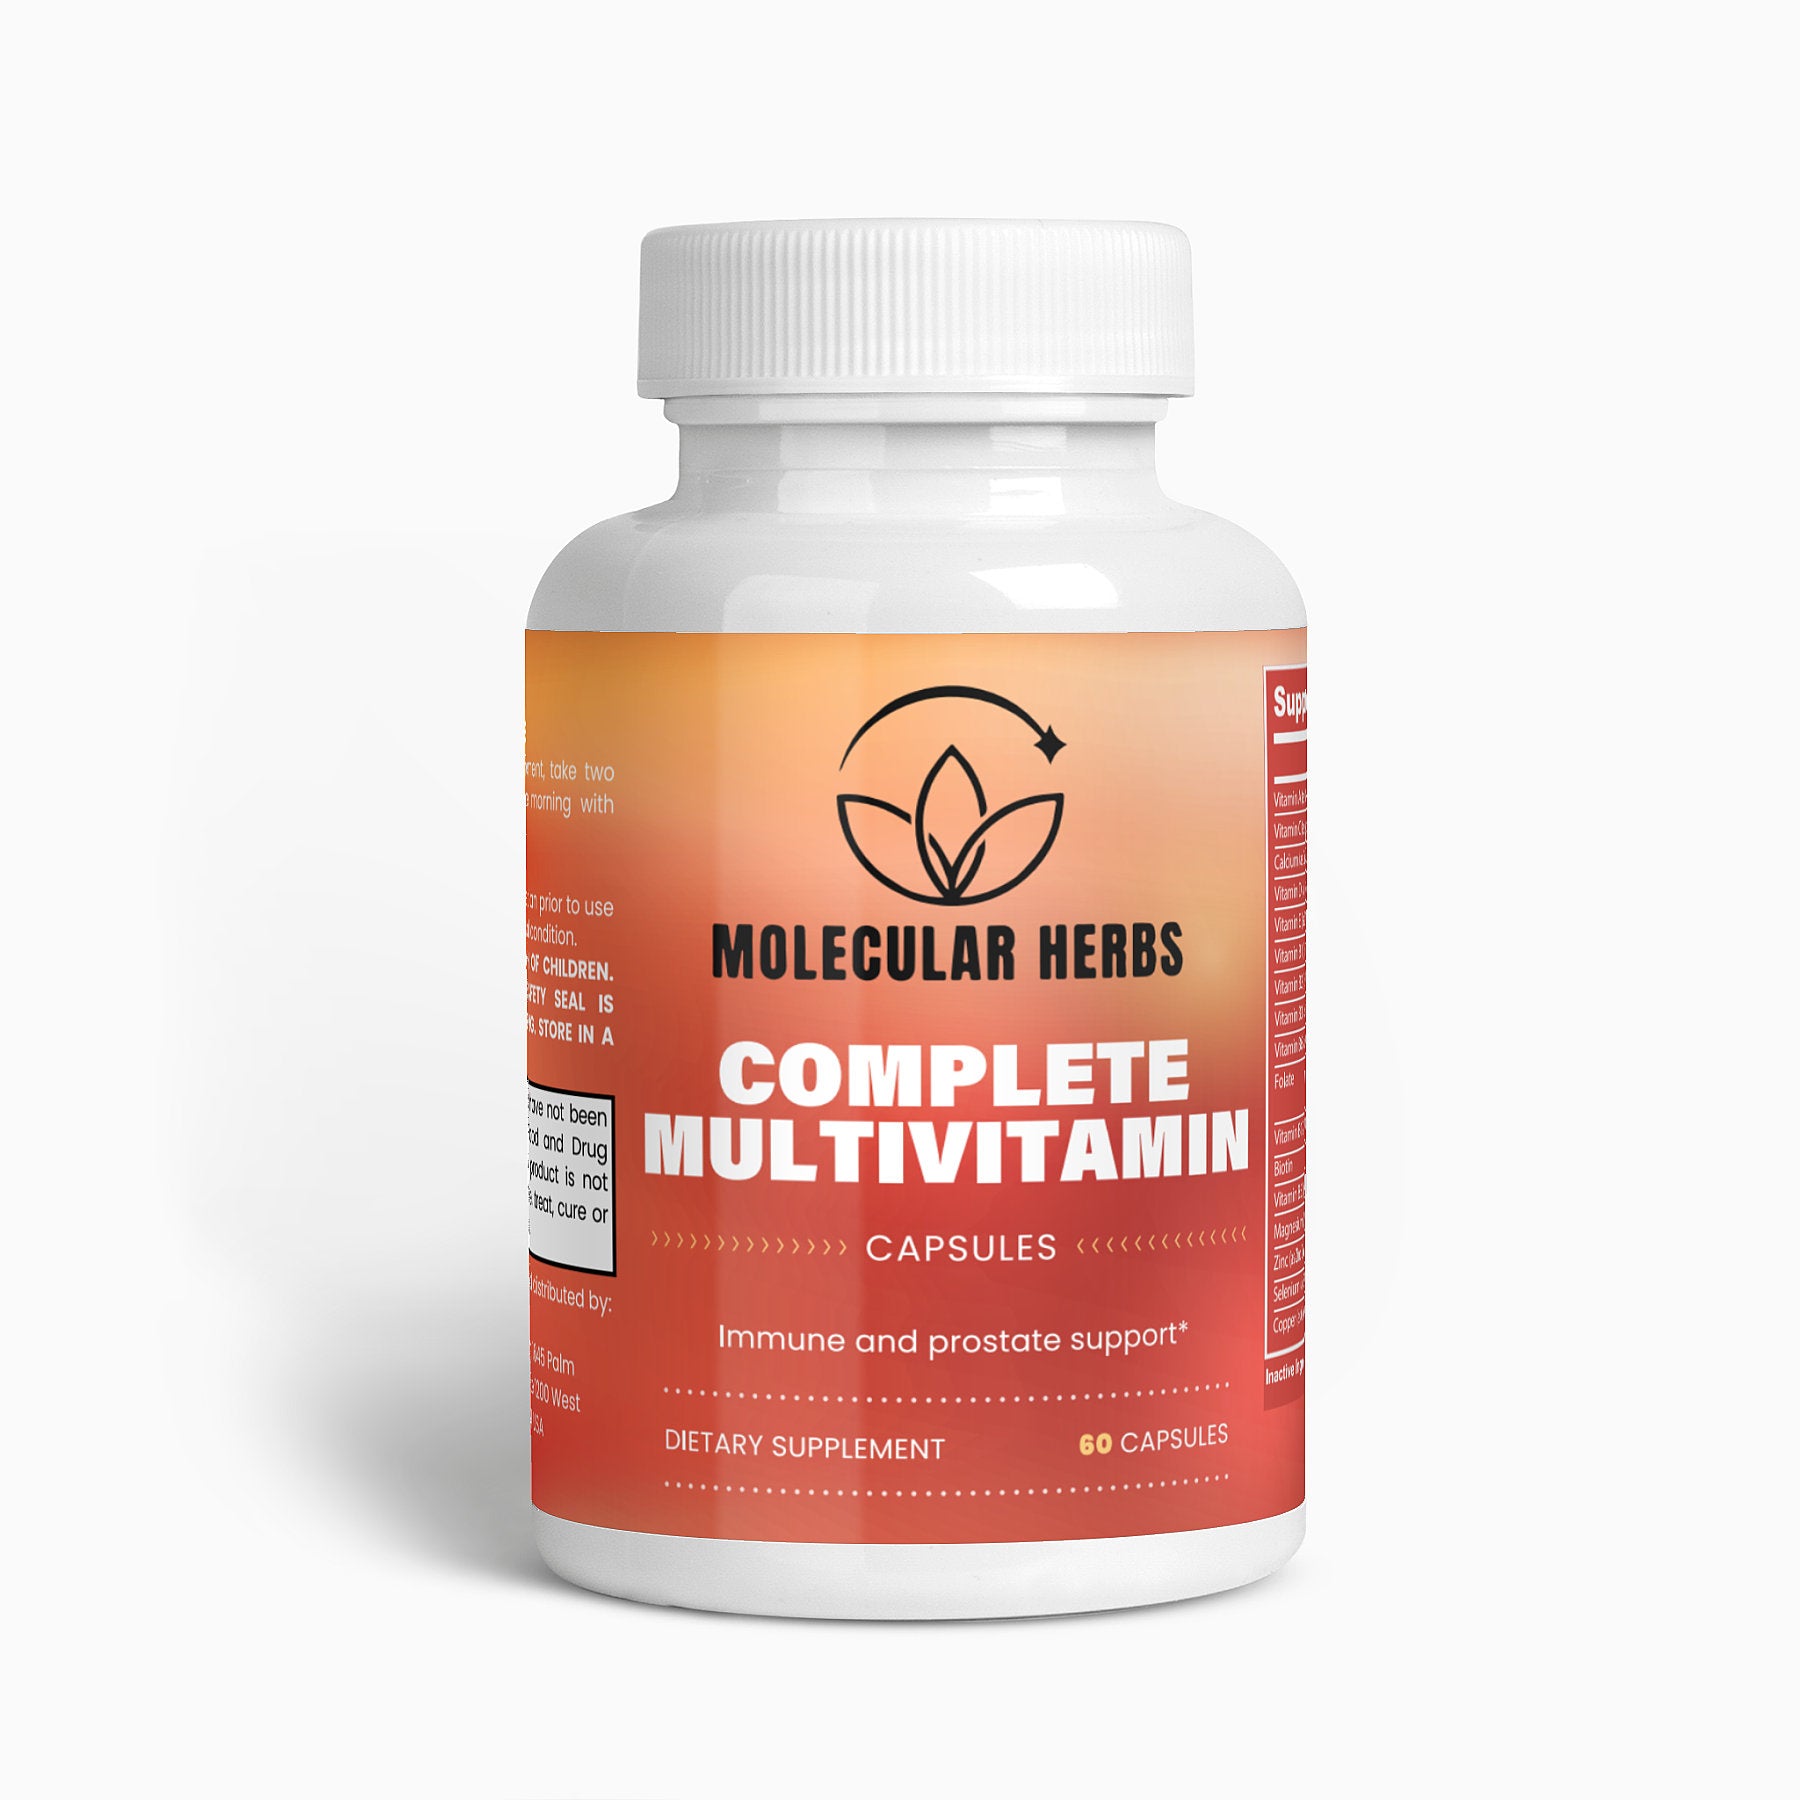 Complete Multivitamin